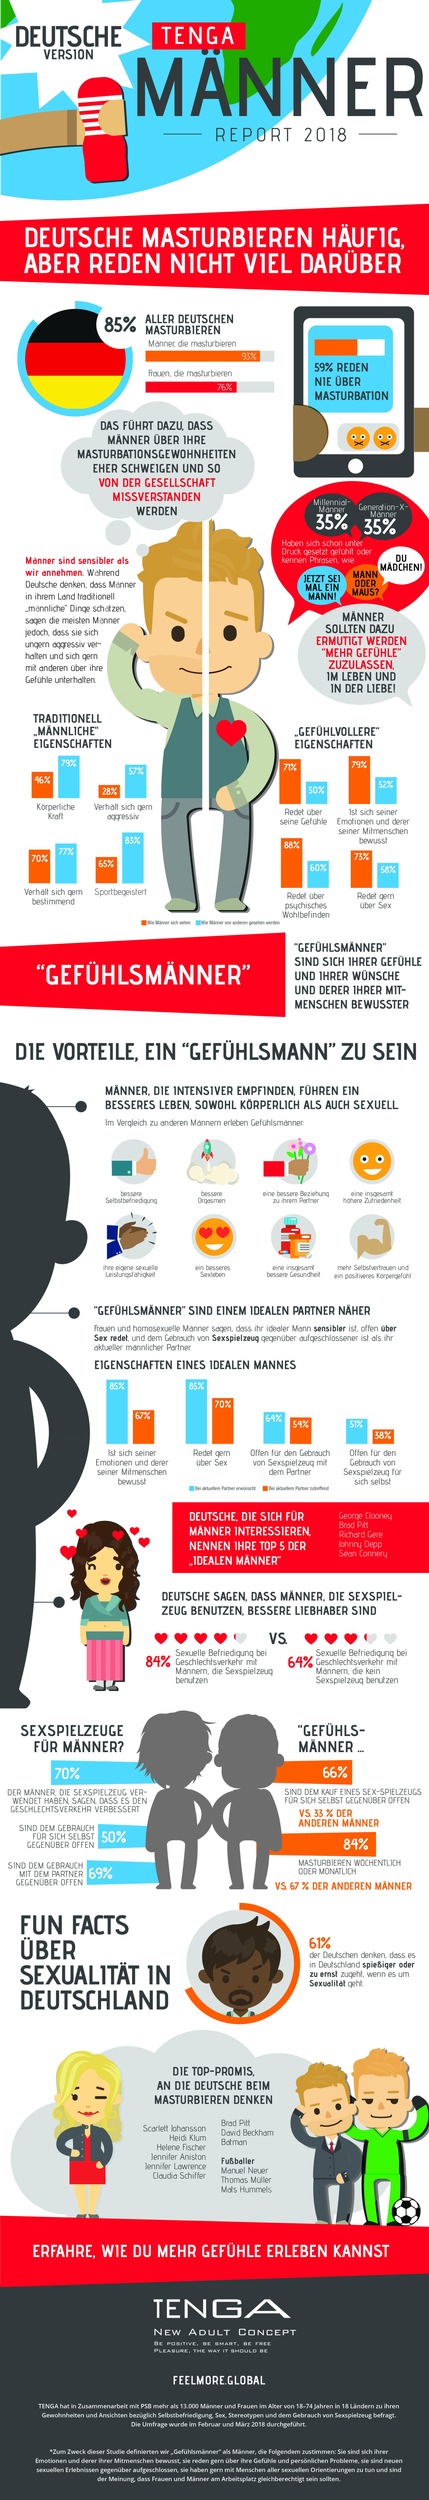 Globale Männerstudie zeigt: Ehrlichkeit ist den Deutschen wichtiger als Aussehen und Vermögen // Ein Drittel der deutschen Männer fühlt sich immer noch unter Druck gesetzt, männlich zu sein